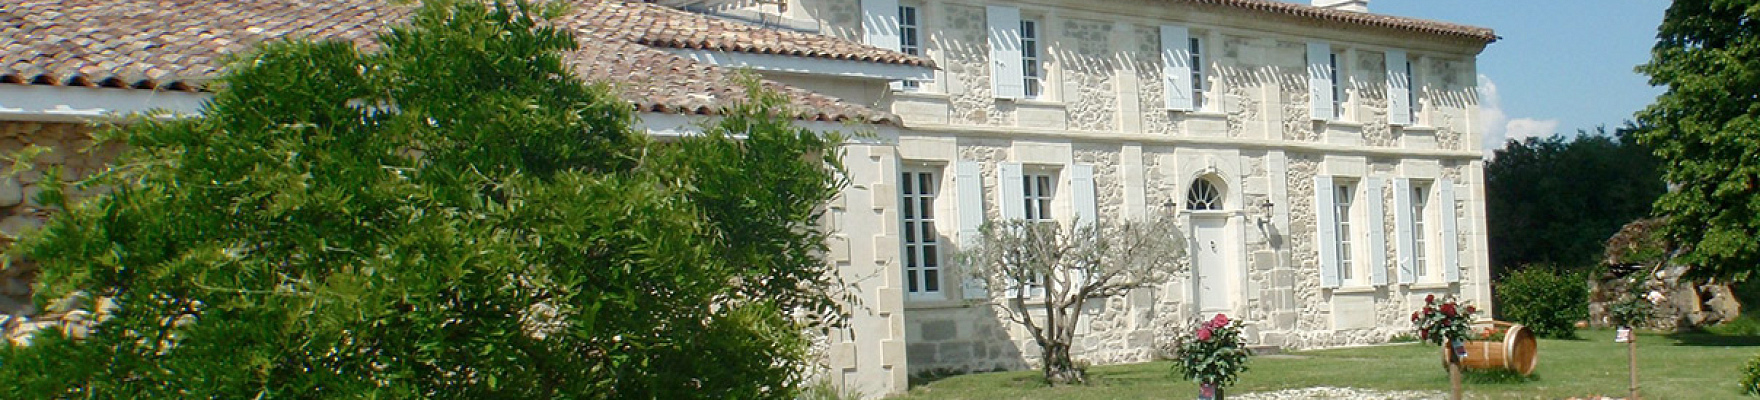 Château La Caderie